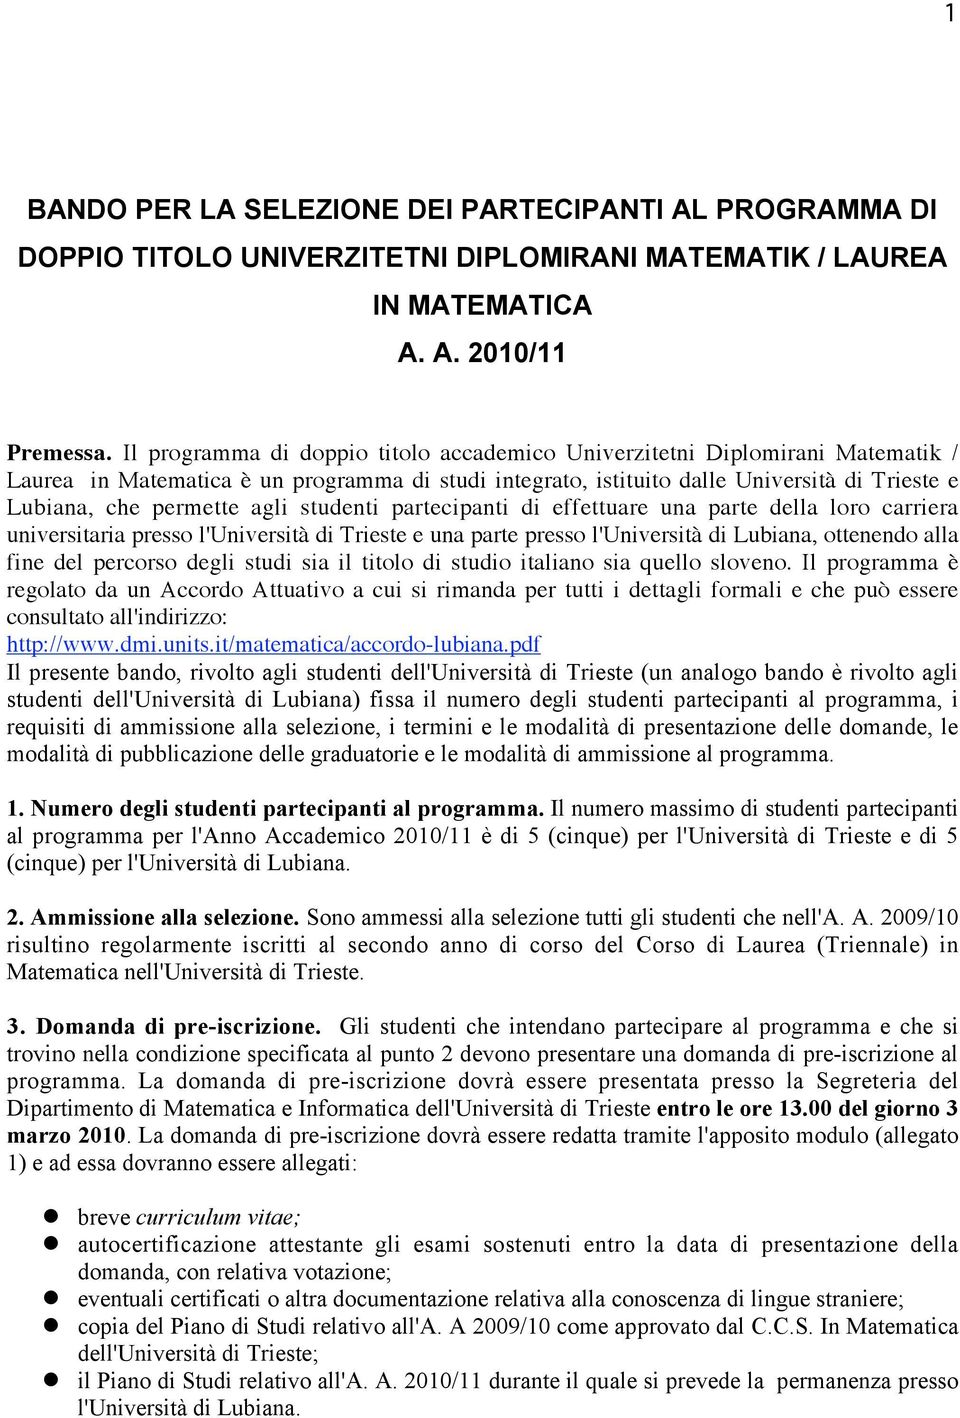 agli studenti partecipanti di effettuare una parte della loro carriera universitaria presso l'università di Trieste e una parte presso l'università di Lubiana, ottenendo alla fine del percorso degli